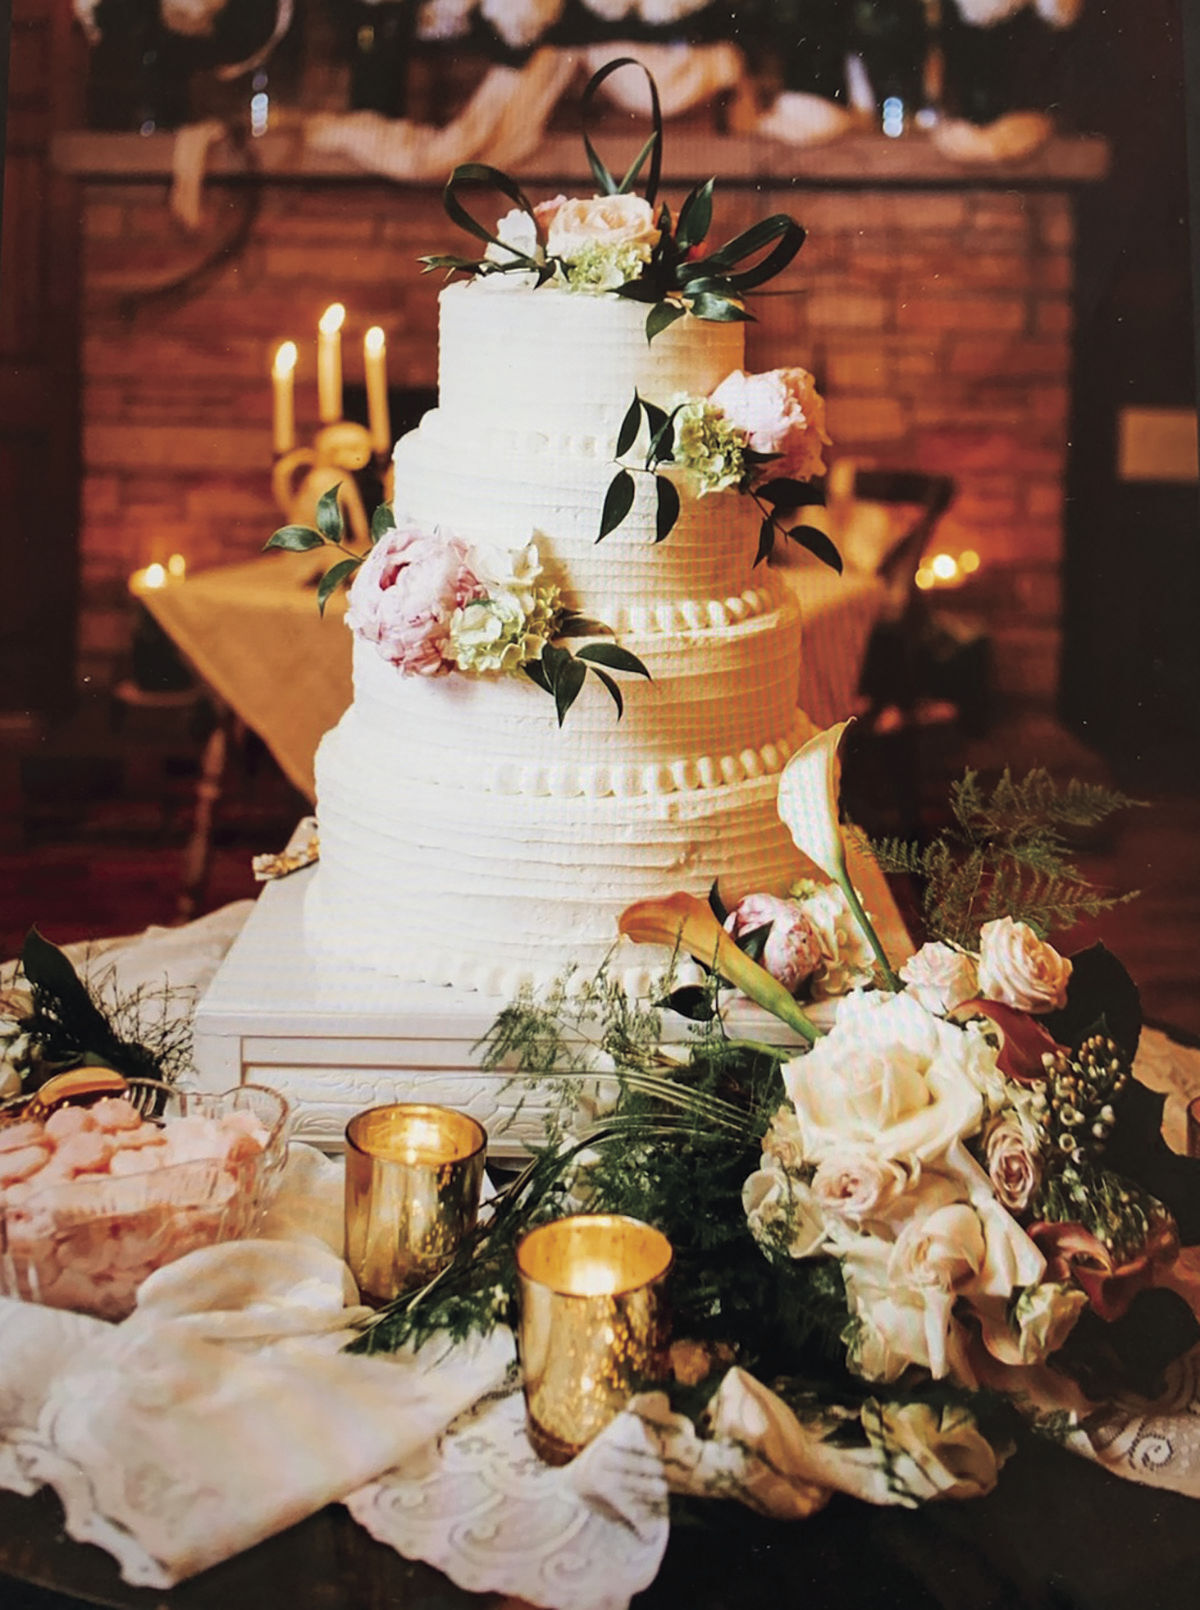 WEDDING CAKES — WAKE AND BAKE